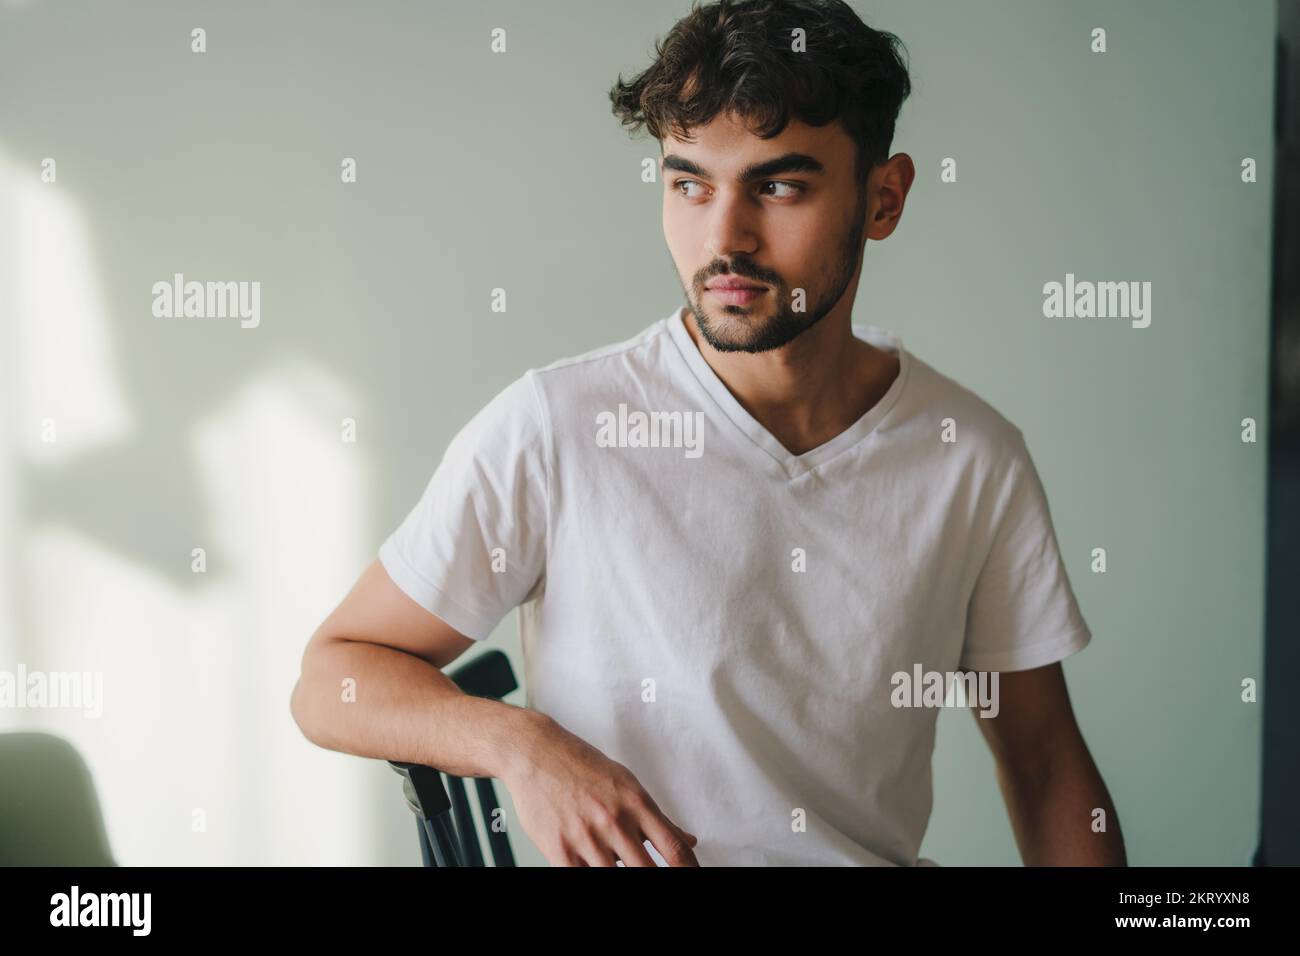 Portrait de beau modèle de mode homme caucasien en t-shirt assis sur une chaise, prise en studio. Personne positive. Appartement confortable. Banque D'Images